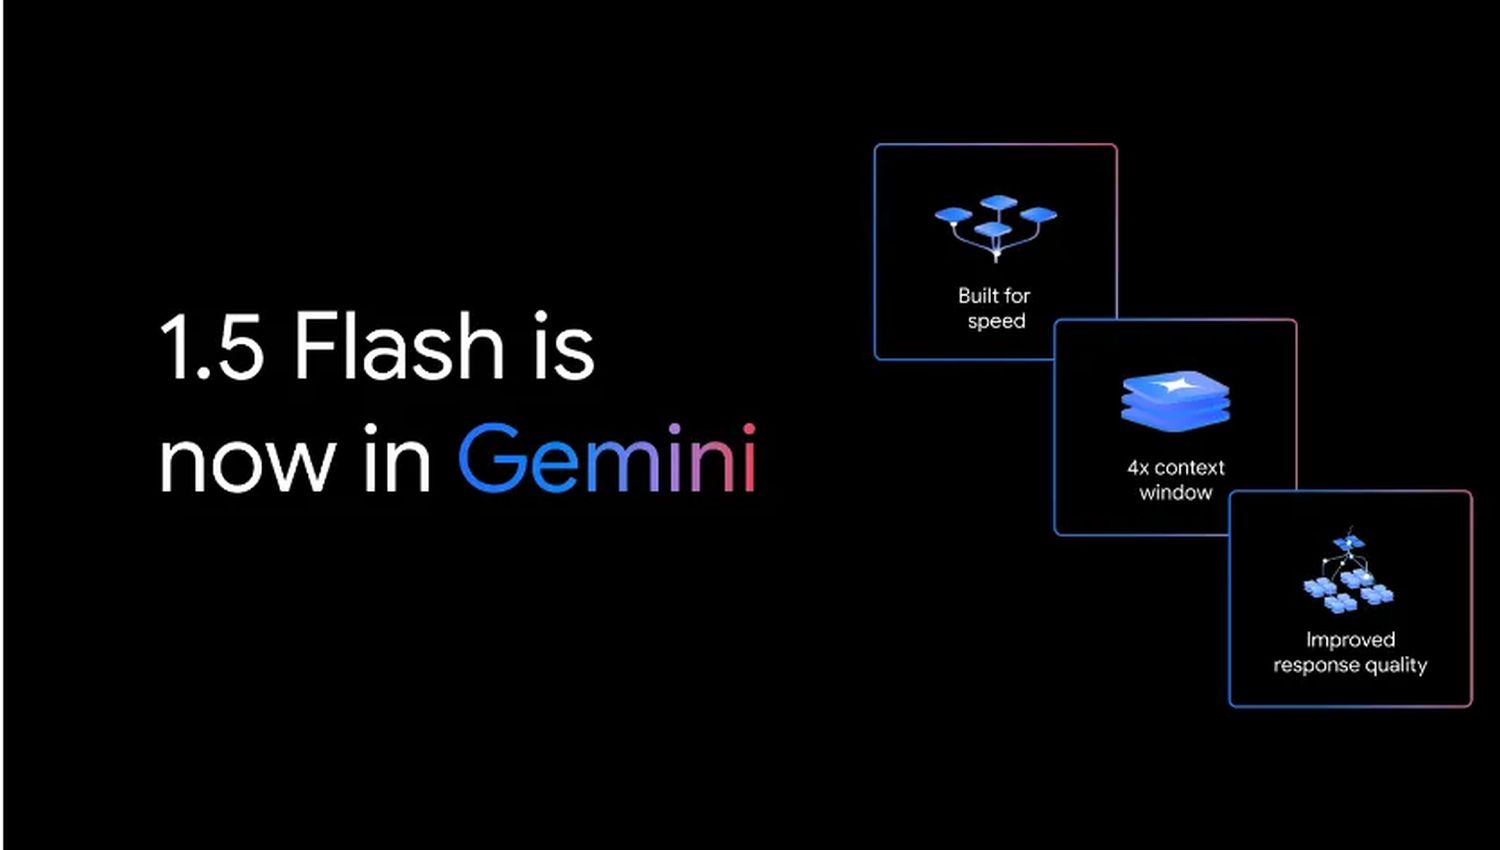 Gemini-Kostenloses-Update-auf-Gemini-1-5-Flash-ist-da-bringt-schnellere-Antworten-und-h-here-Qualit-t